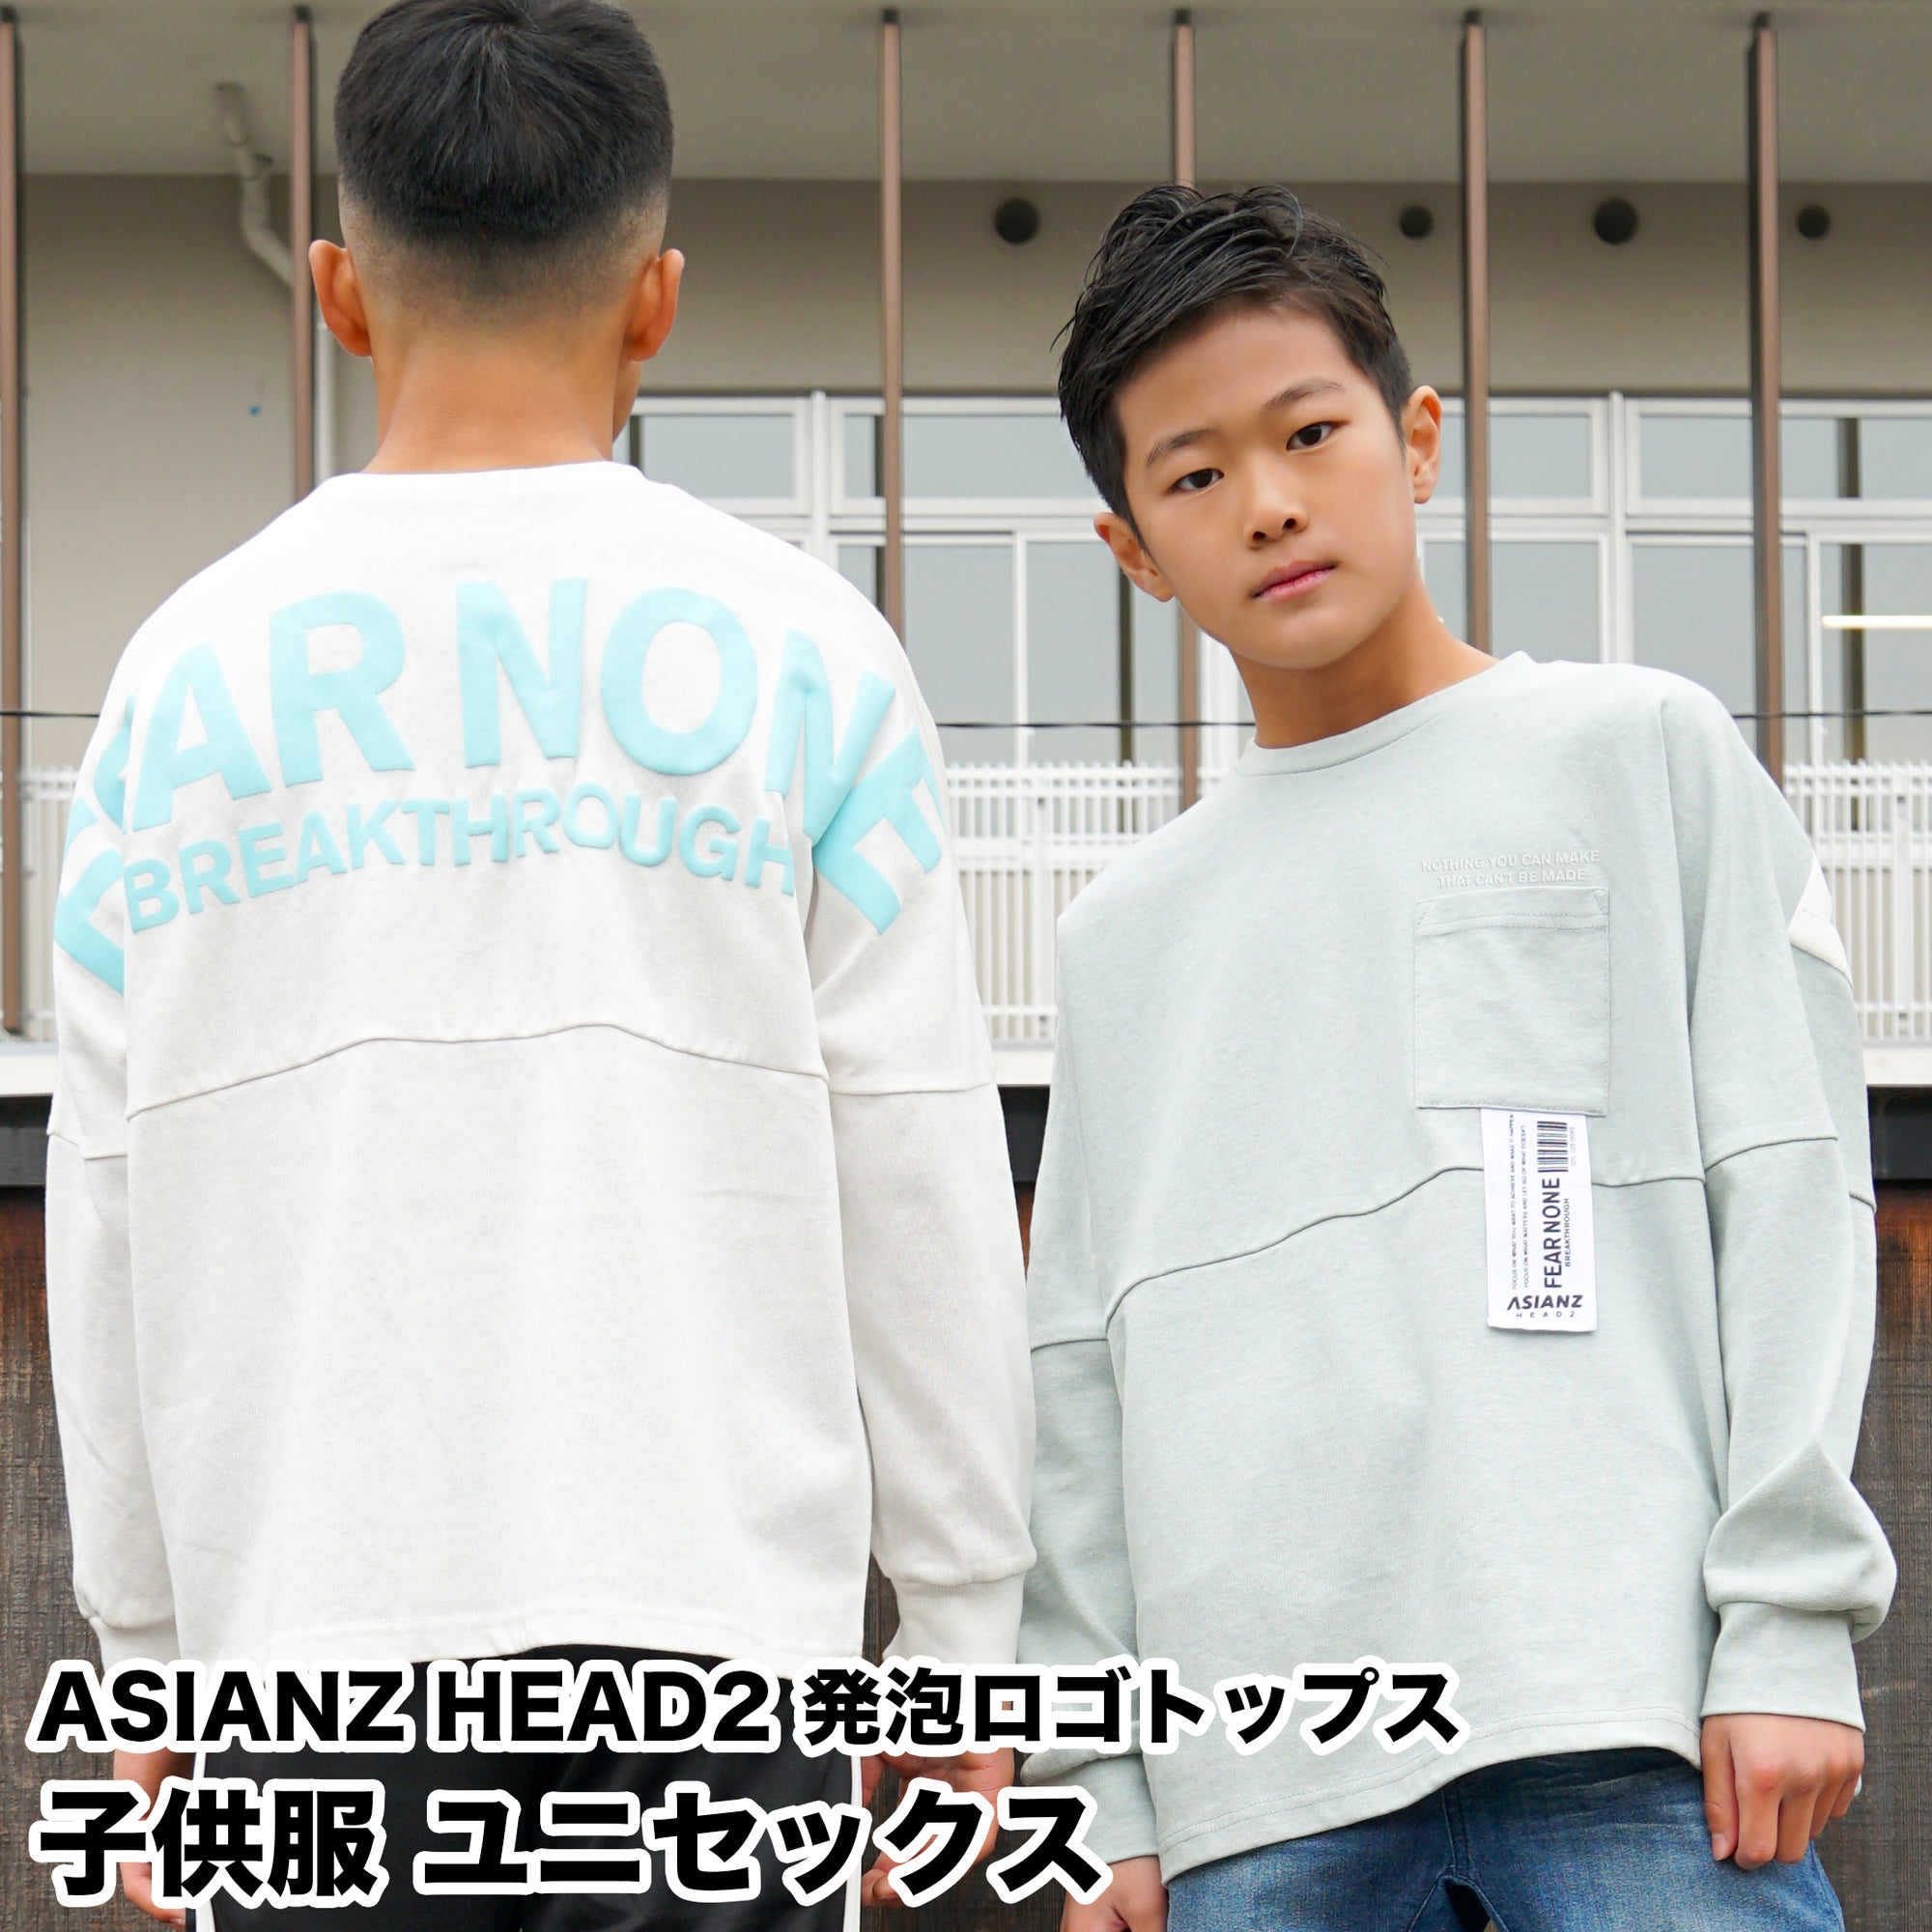 (40%オフ! セール商品)ASIANZ HEAD2 ポケ付きTシャツ キッズウェアー